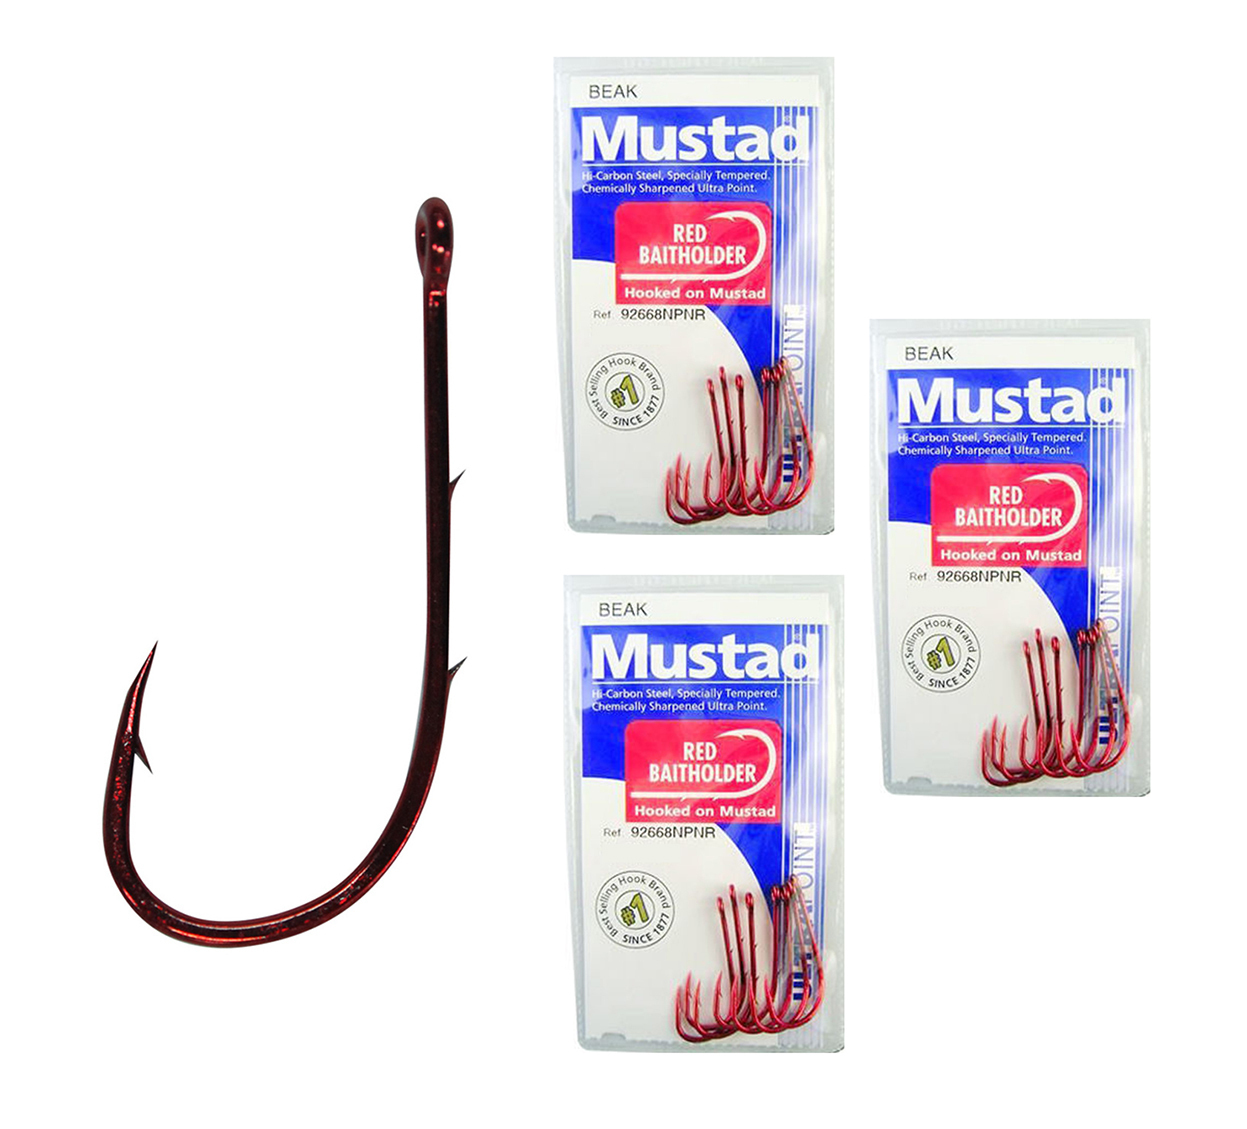 Mustad Red Baitholder Size 4/0-92668npnr -Bulk 3 Pack-Chemically